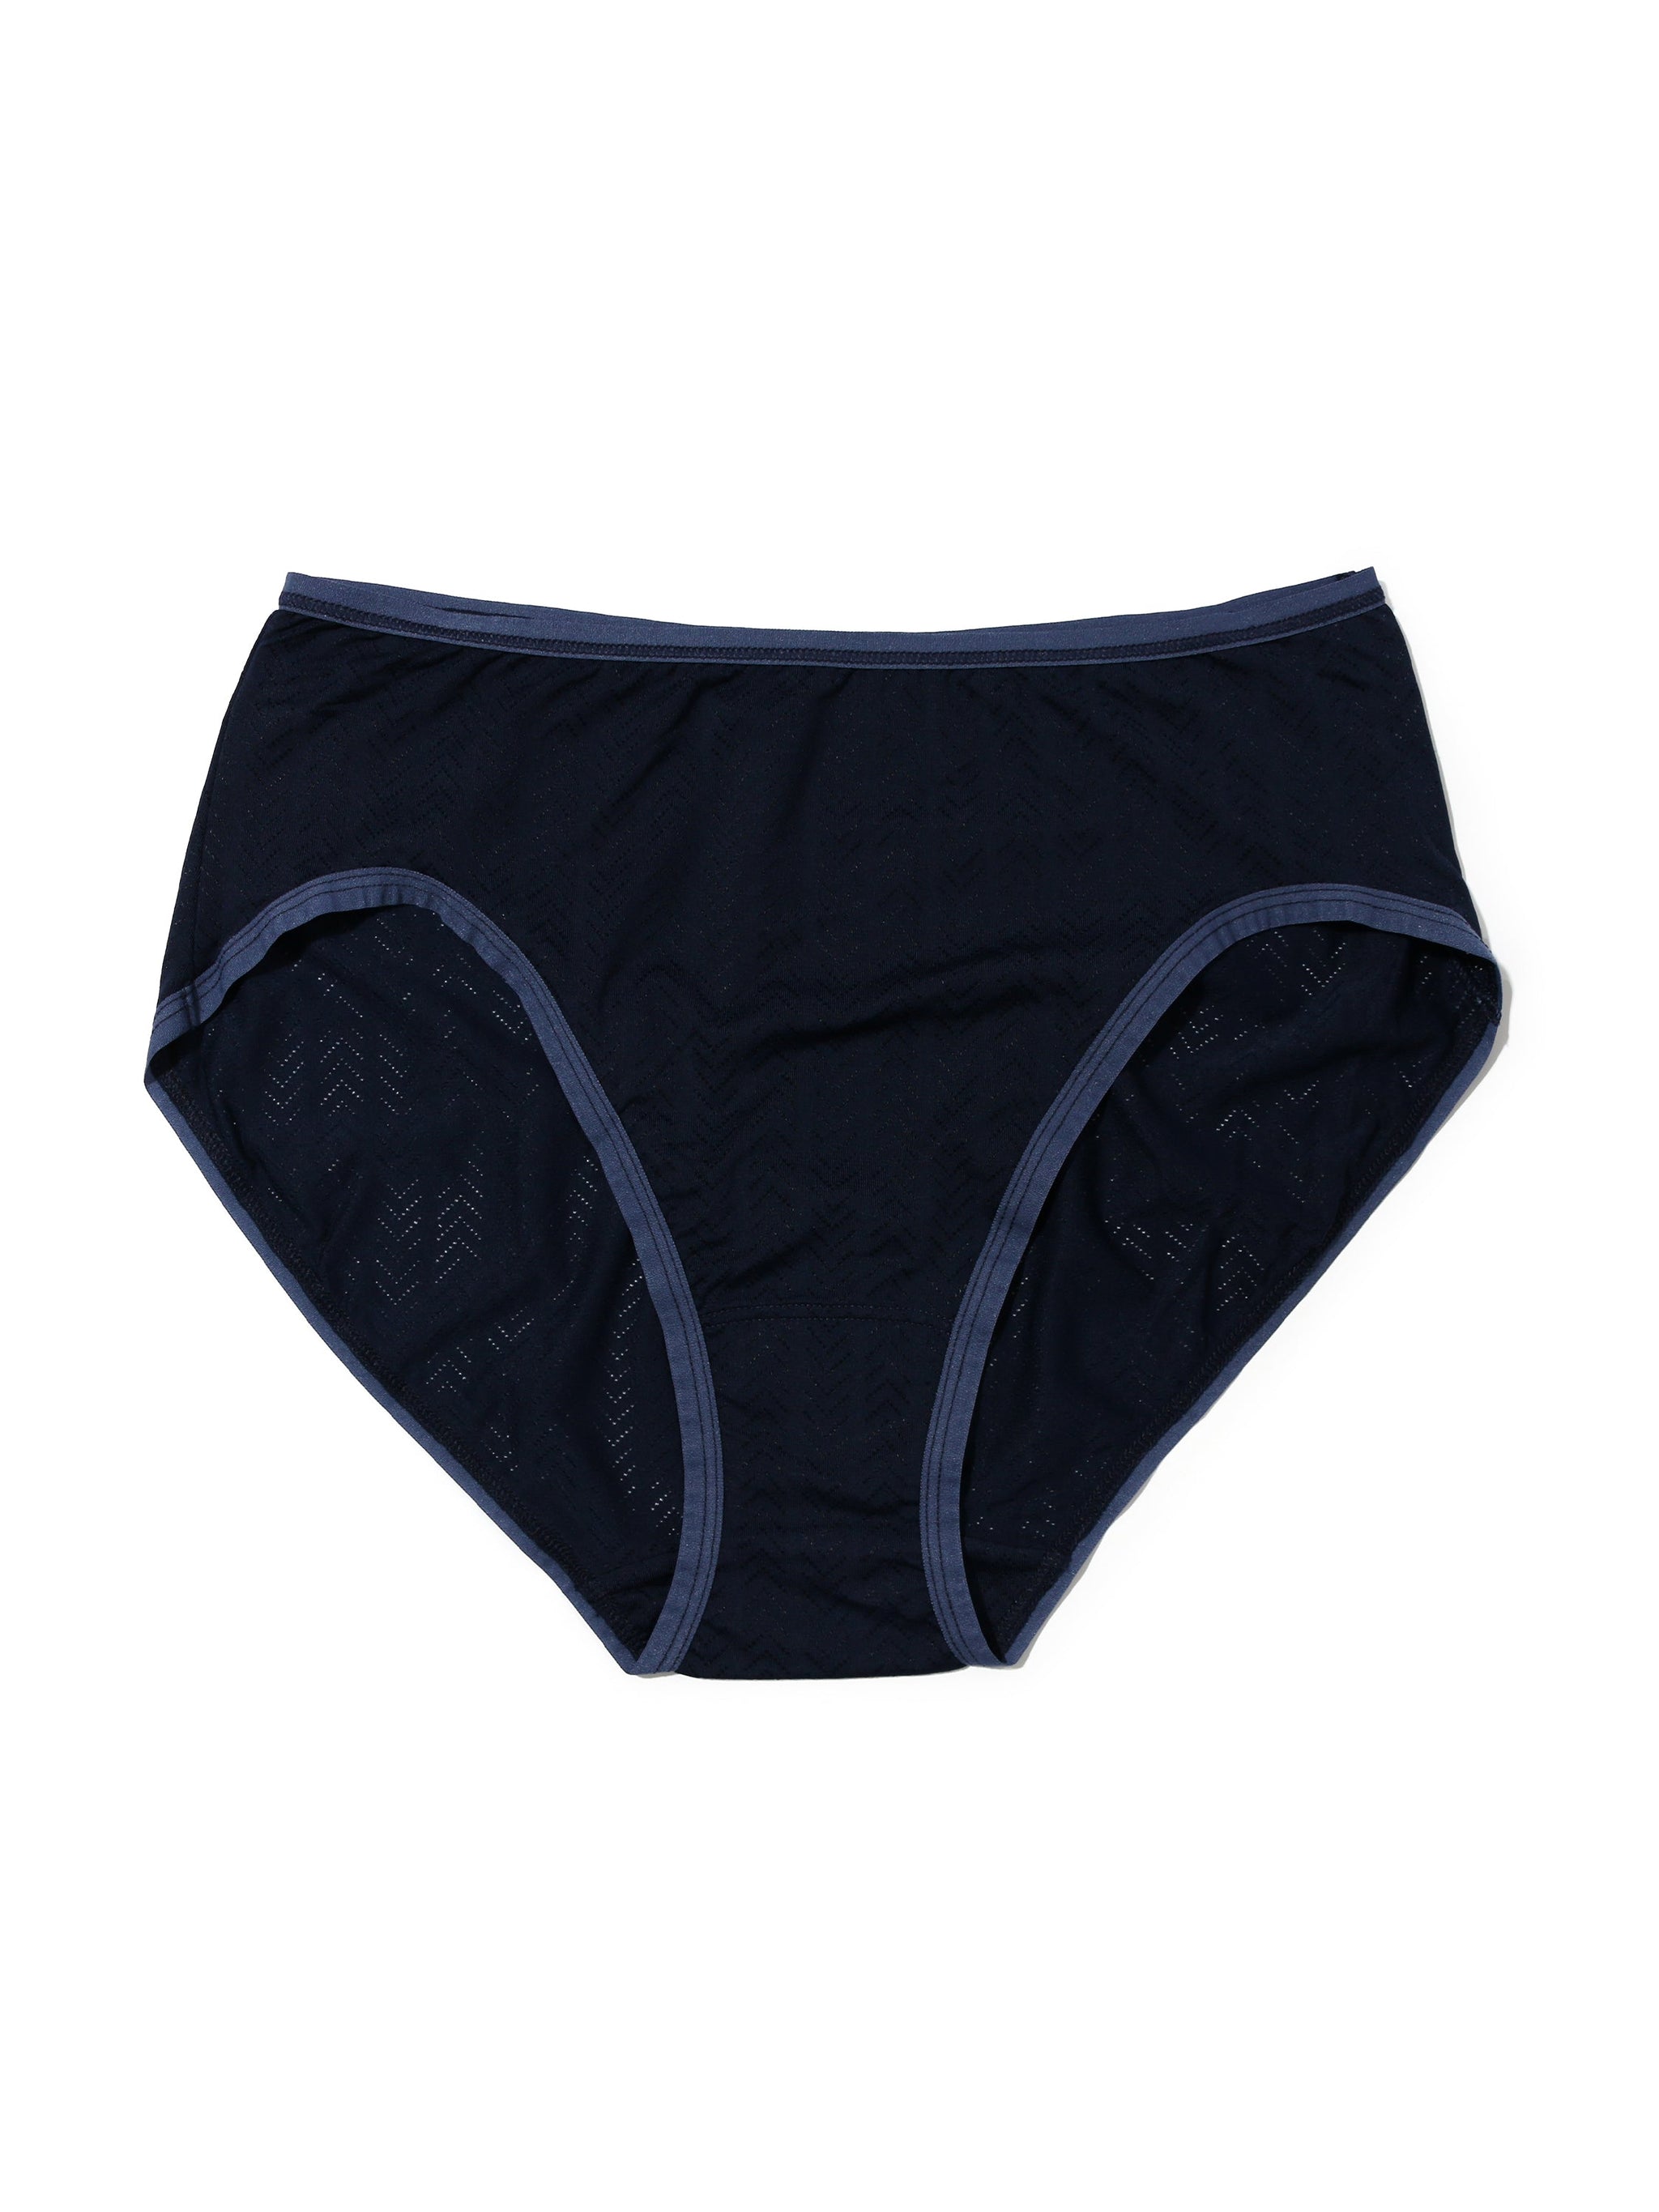 Central Perk Knickers 2 Pack Panties FRIENDS Underwear Women Ladies Size 6  to 22